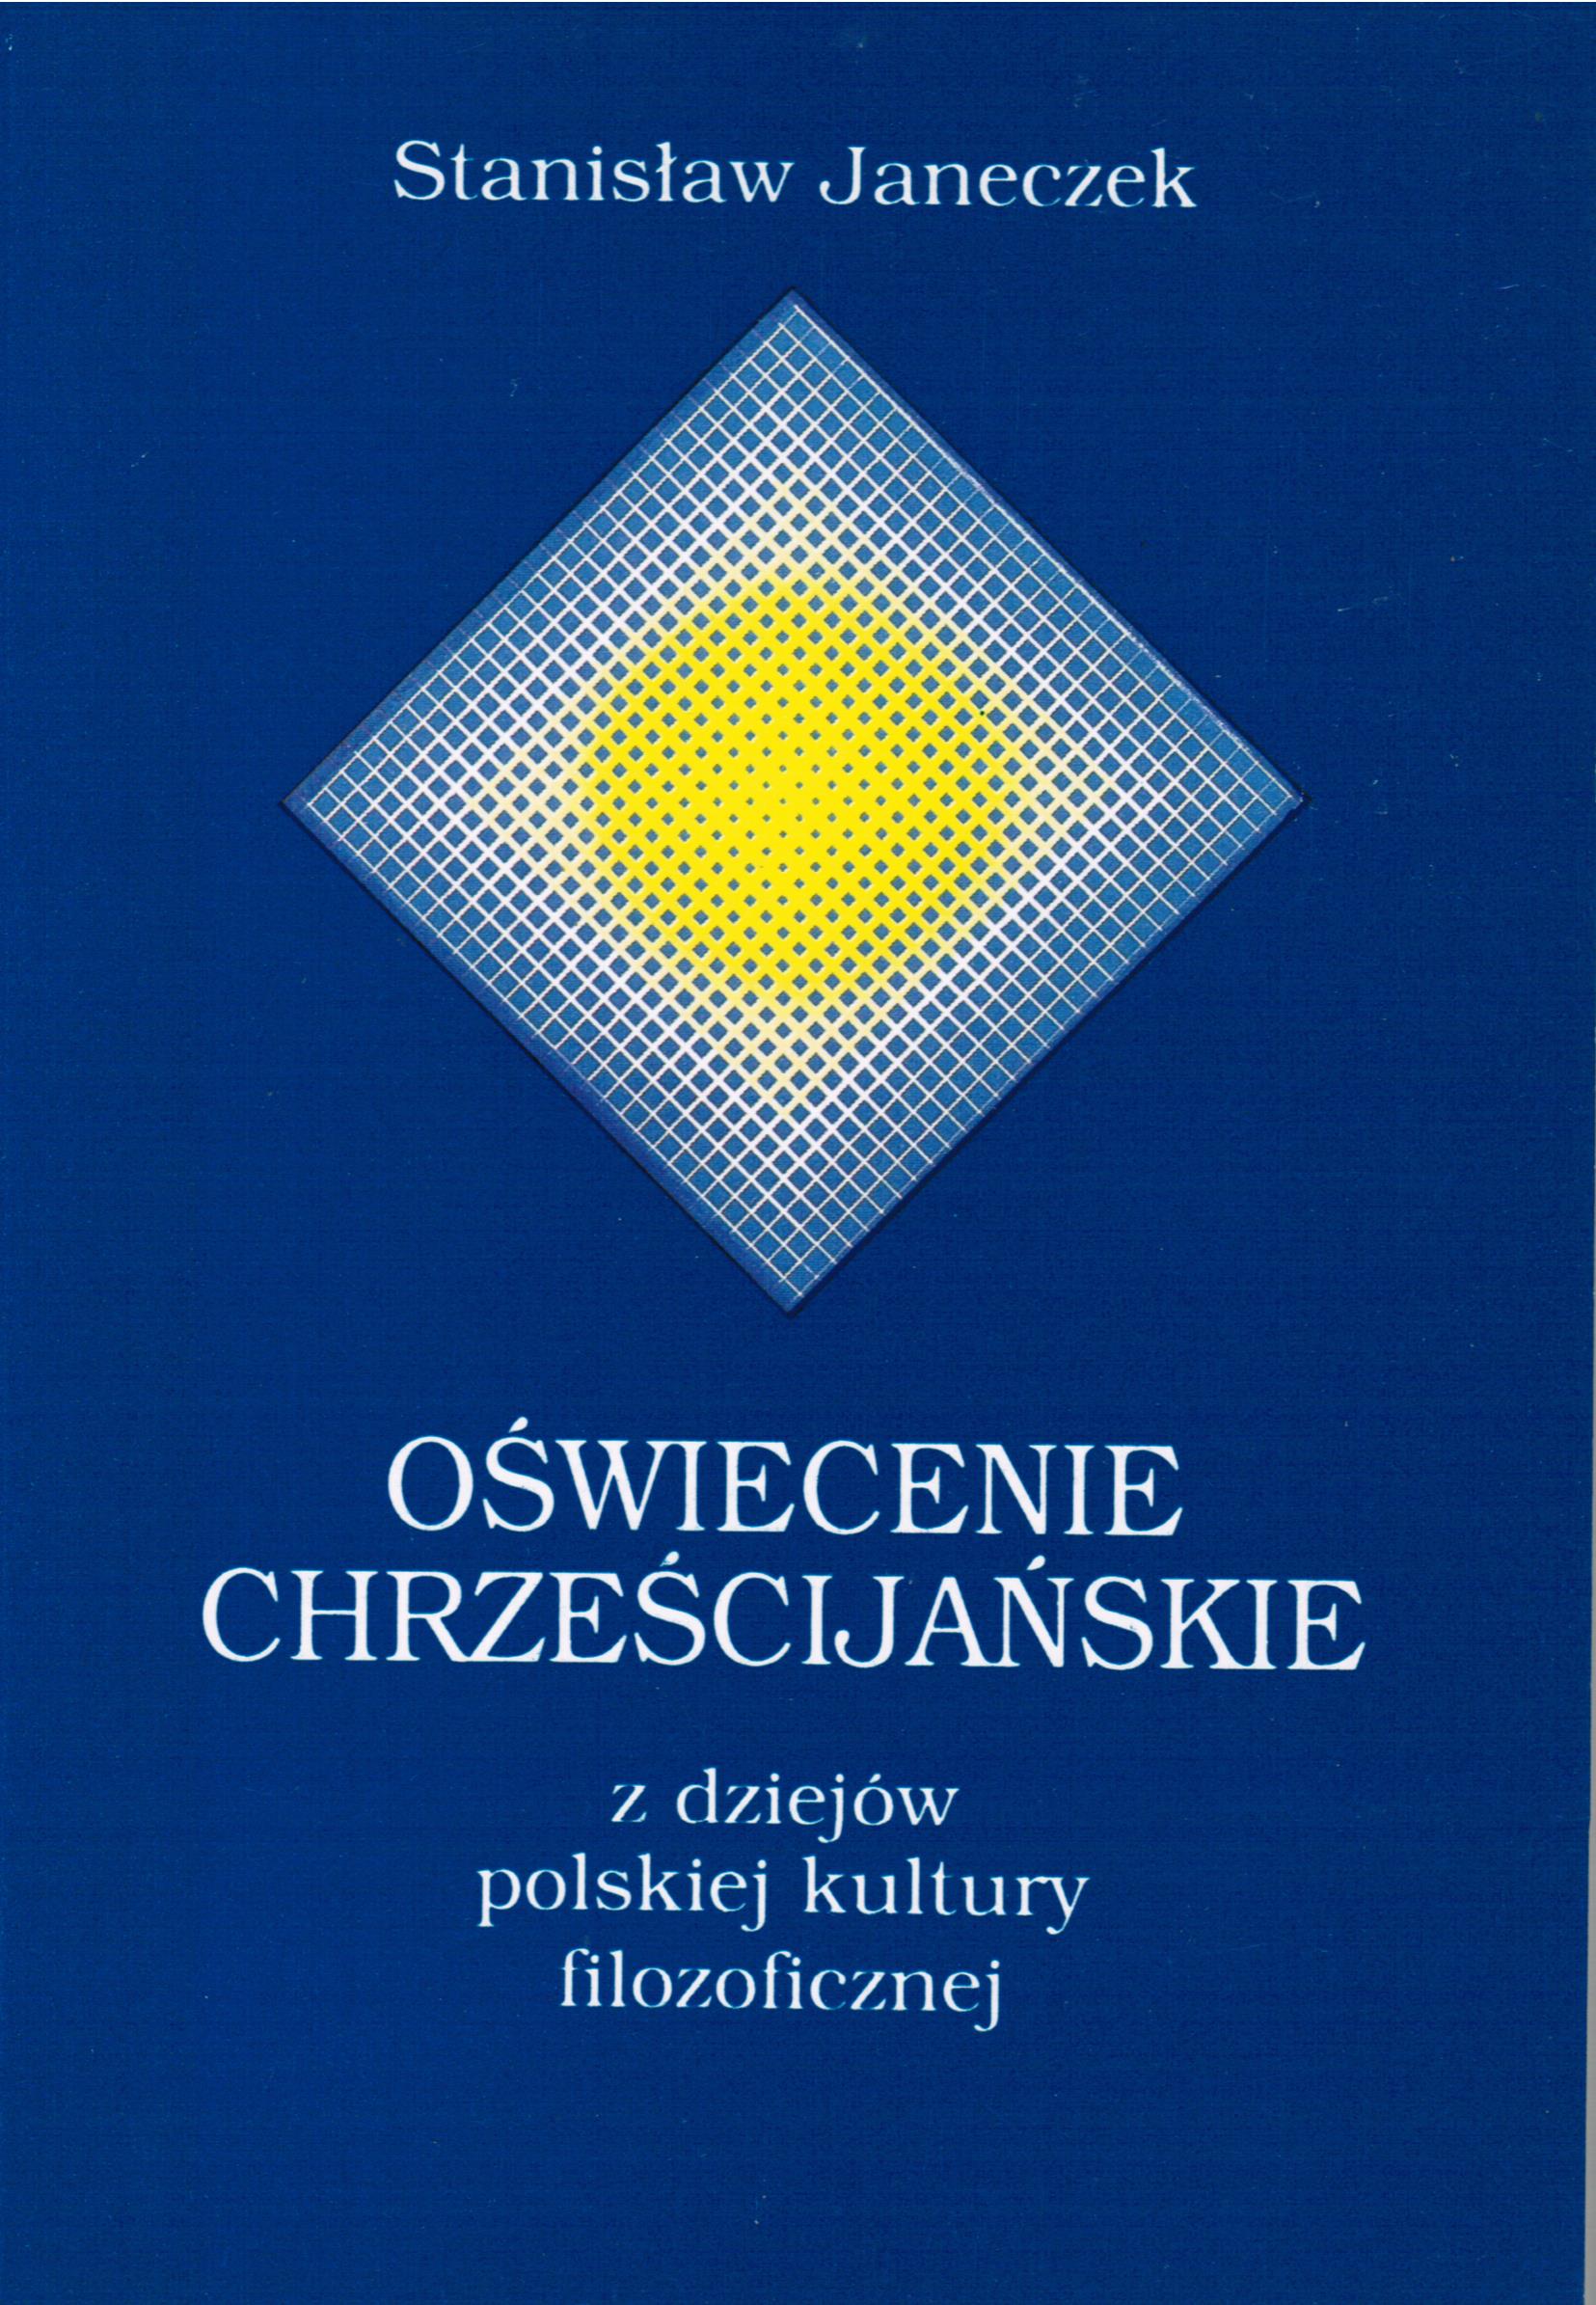 Oświecenie chrześcijańskie. Z dziejów polskiej kultury filozoficznej